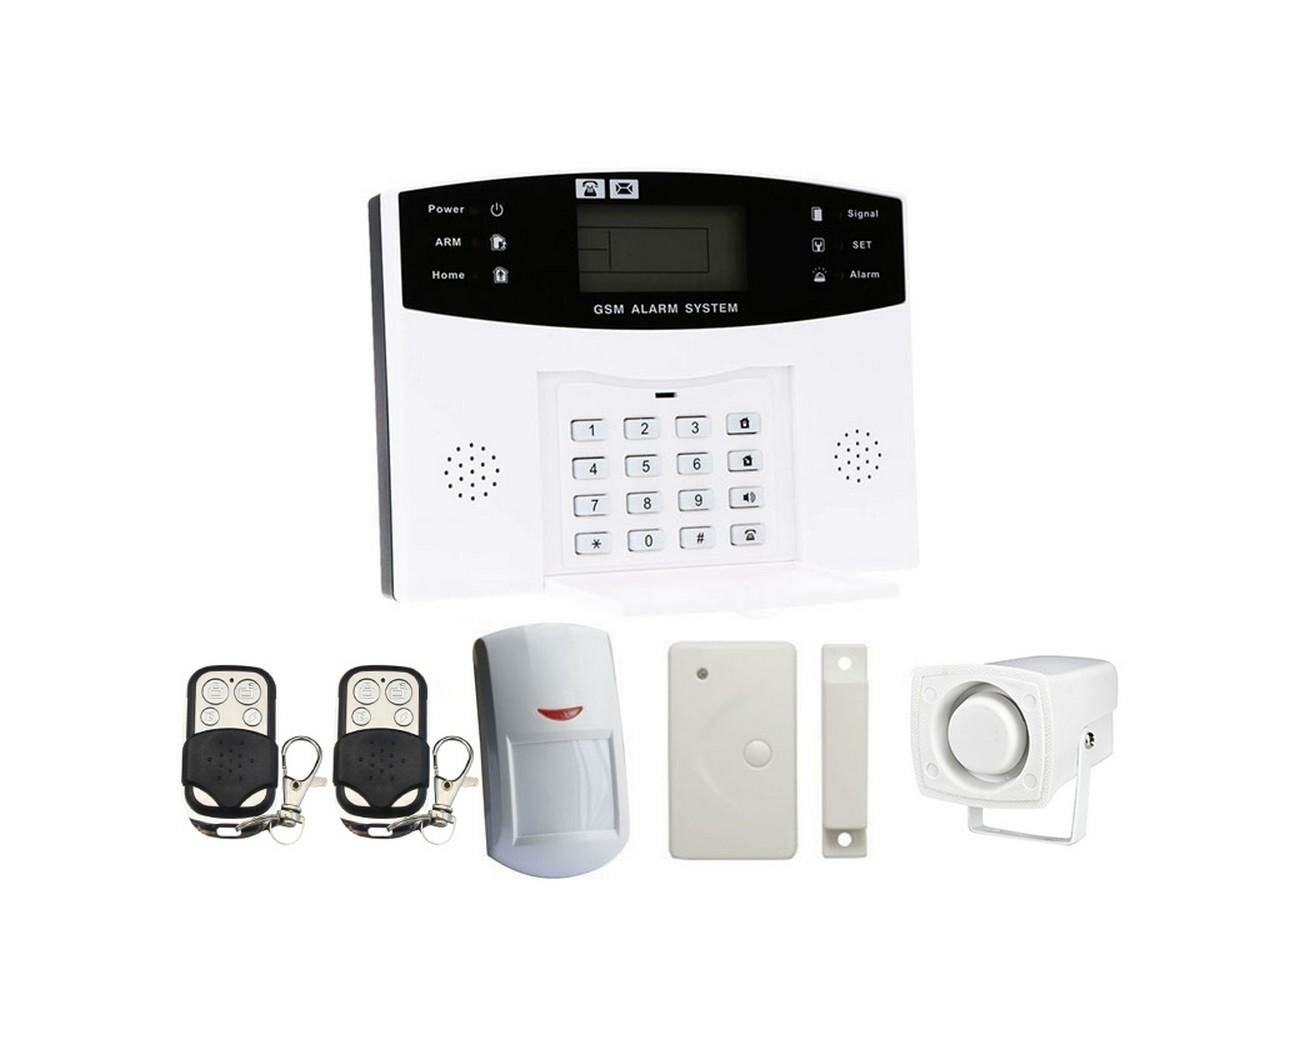 Беспроводная охранная GSM/WiFi сигнализация для дома - Страж Сигнал (GSM-WiFi) (Q39373BE) для дачи и гаража в комплекте с датчиками